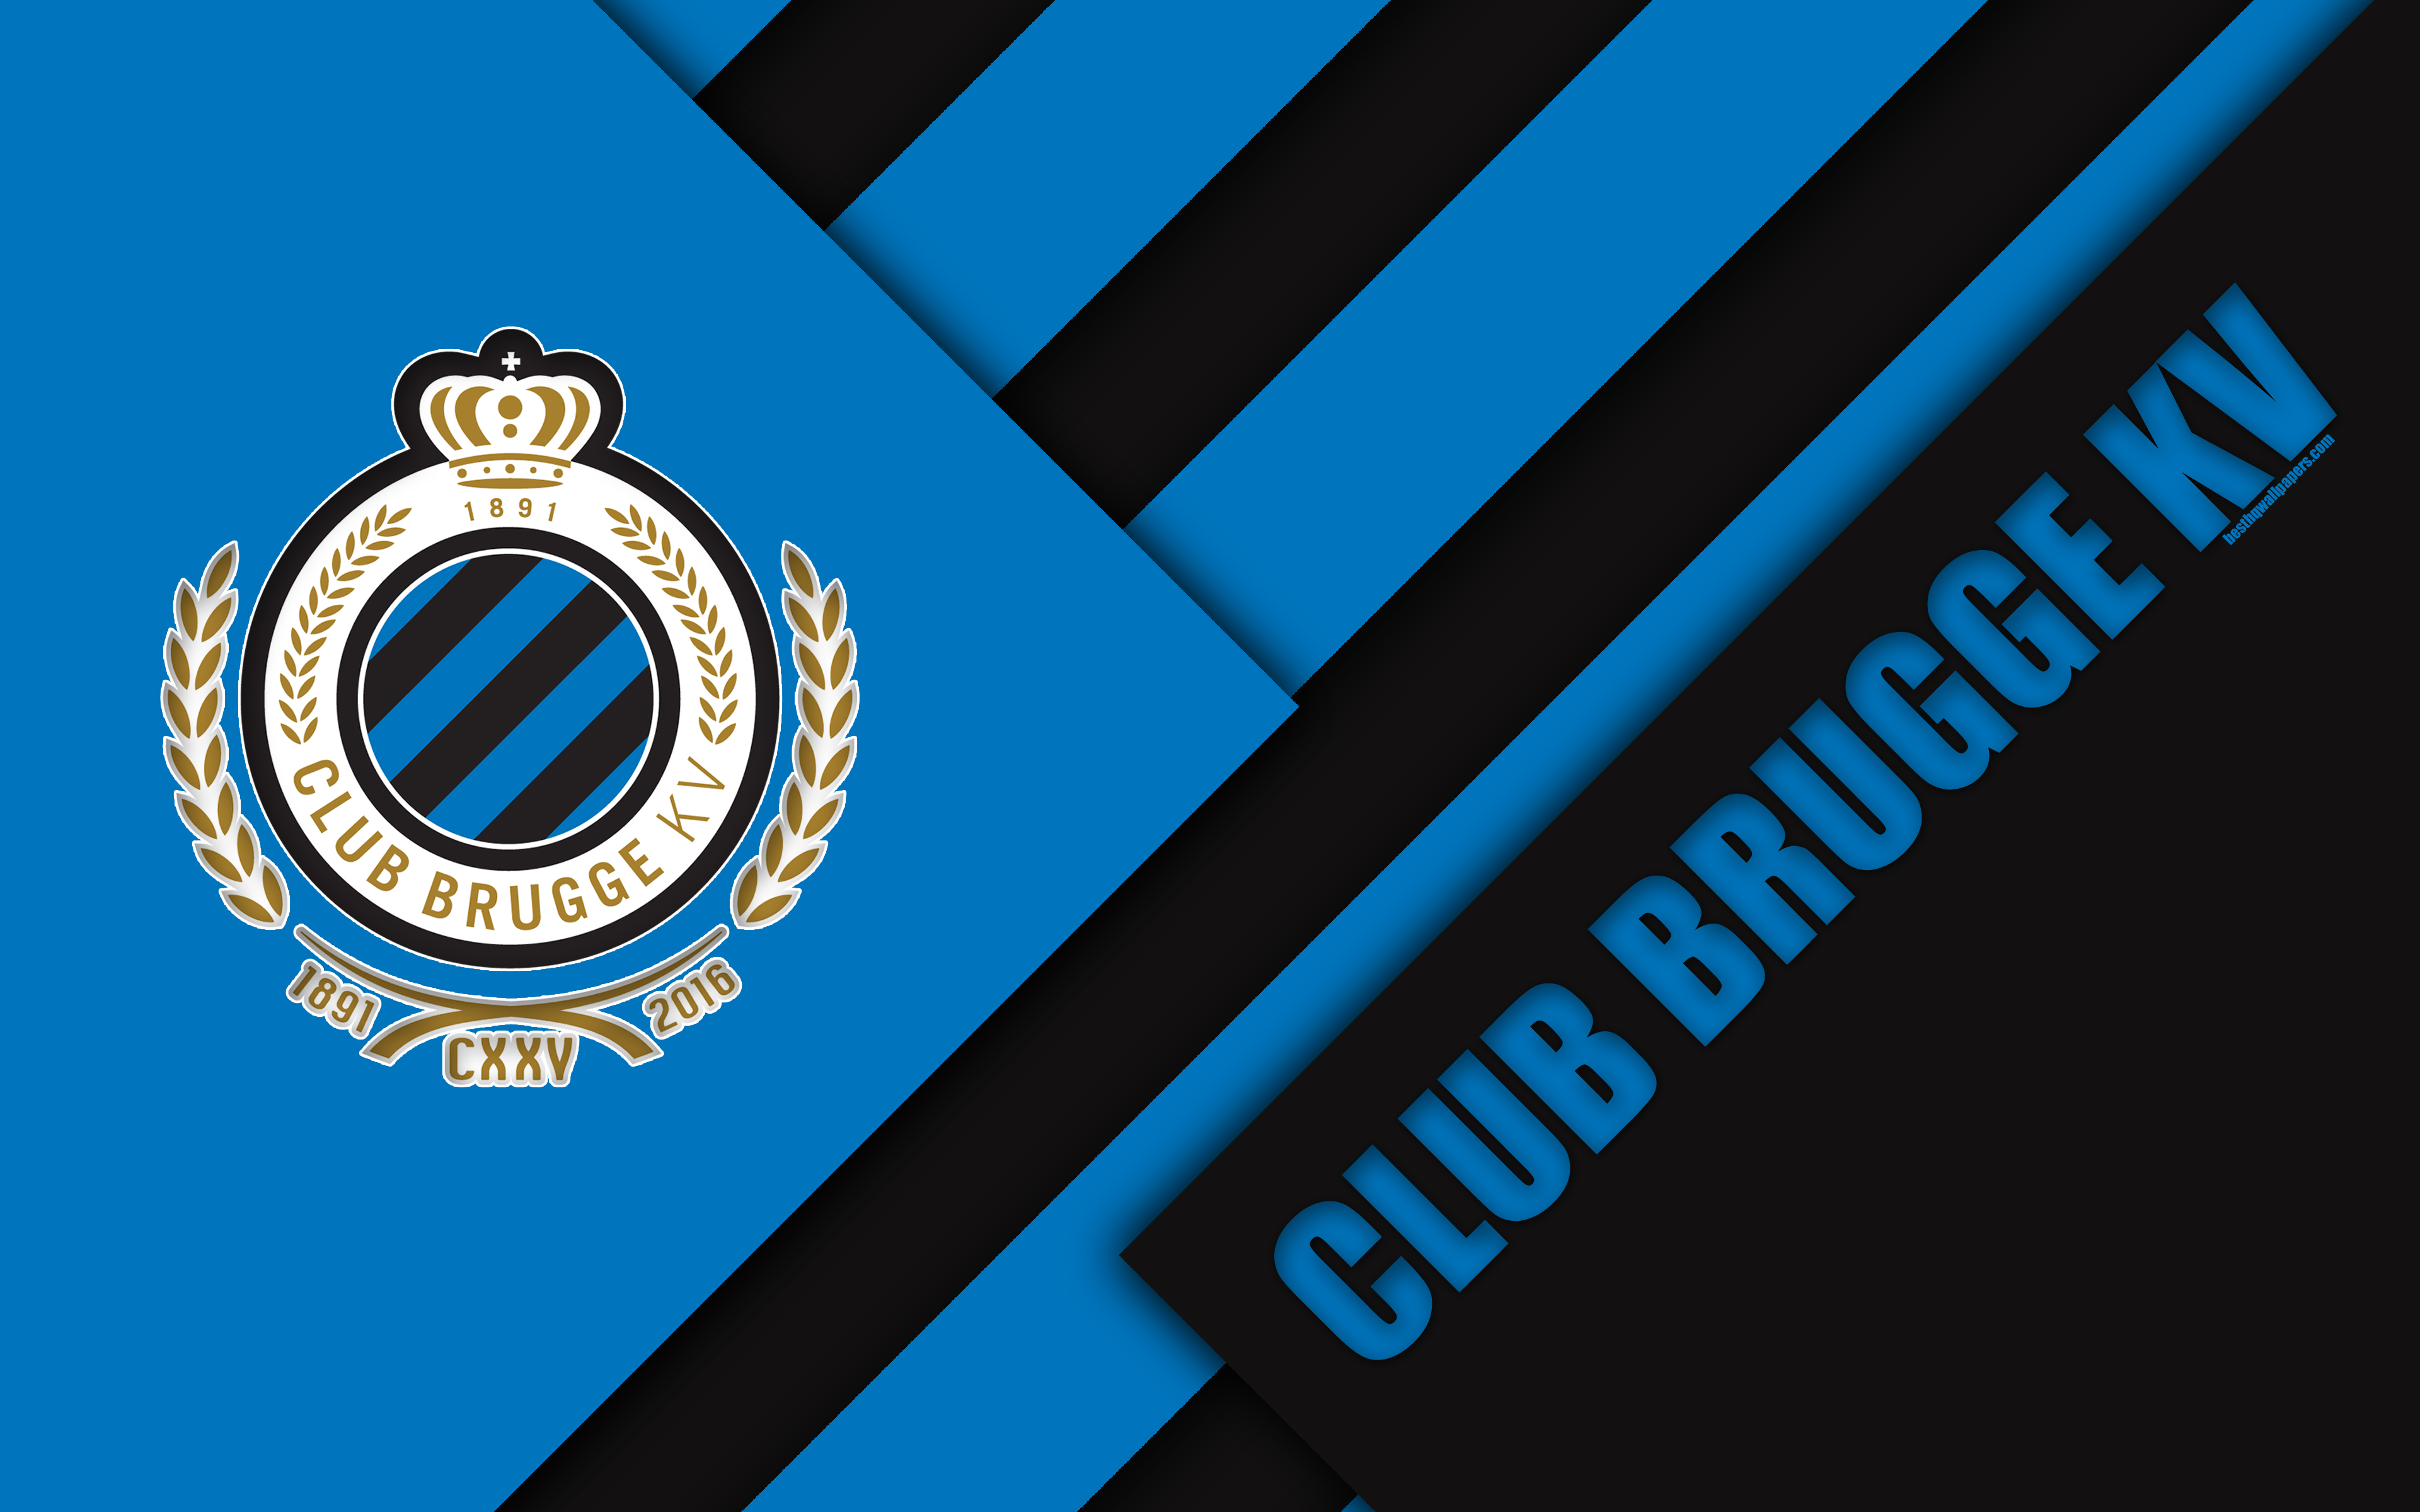 Download wallpaper Club Brugge KV, 4k, Belgian Football Club, black